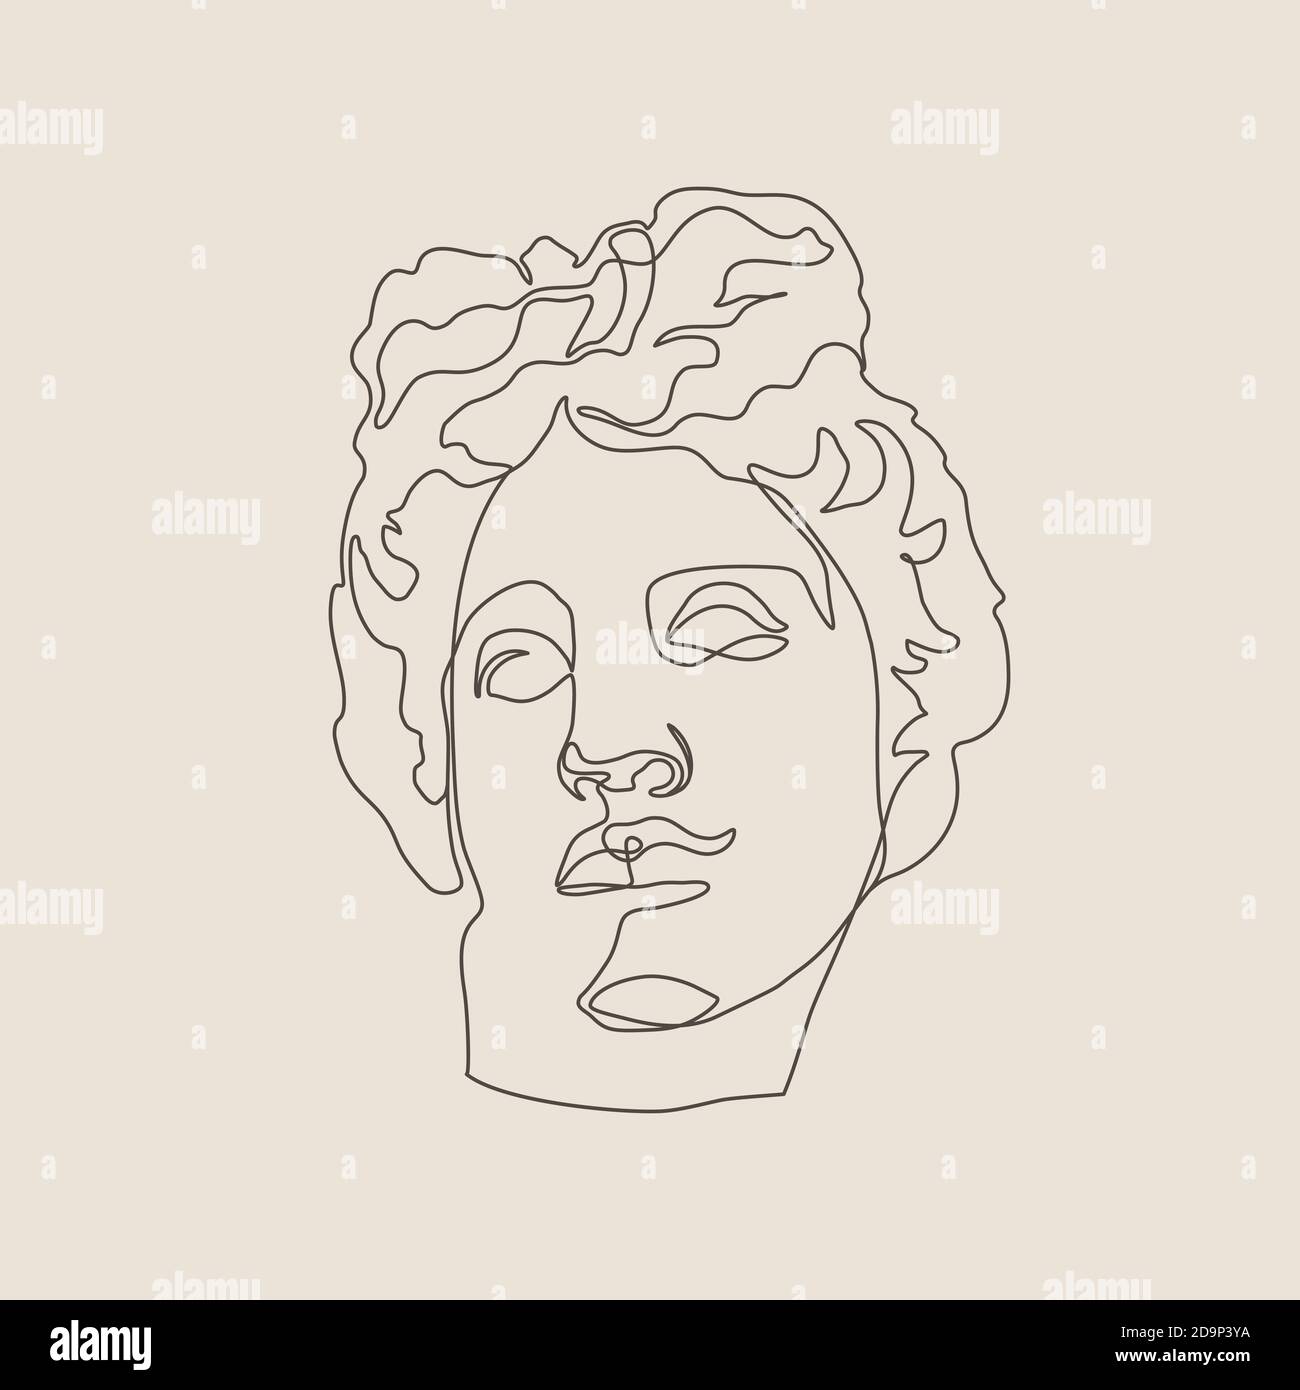 Eine Linie Skulptur von Apollo in einem minimalistischen trendigen Stil. Vektor-Illustration des griechischen Gottes für Drucke auf T-Shirts, Postern, Postkarten, Tattoos Stock Vektor